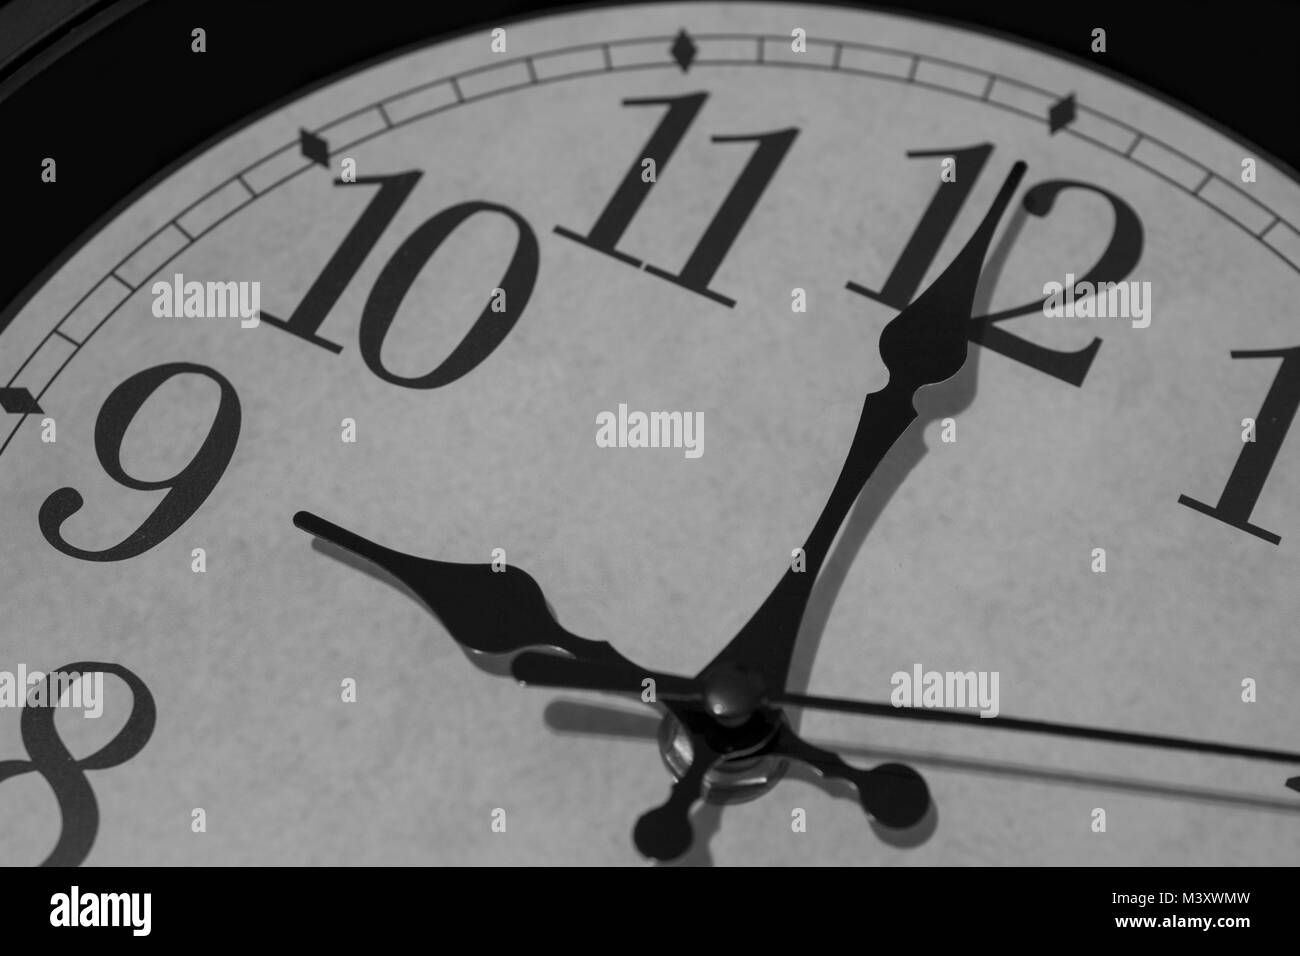 Gros plan sur les pointeurs d'une horloge marquant exactement neuf heures - le rendu noir et blanc. L'accent est mis sur l'heure et la minute de communication. Banque D'Images